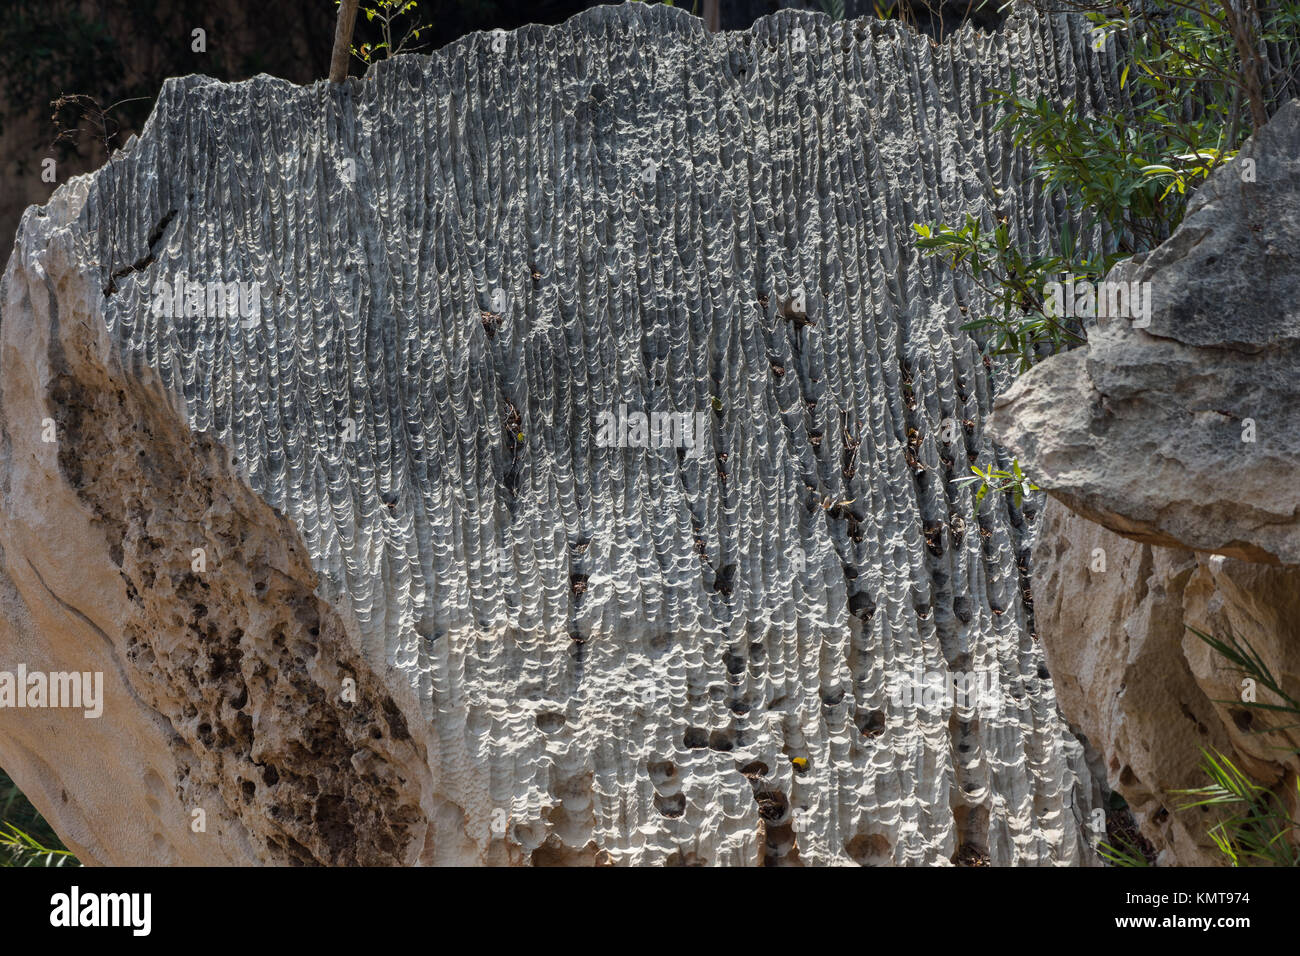 Detaillierte Textur durch Verwitterung an der Oberfläche des Kalkstein zutage. Tsingy de Bemaraha National Park. Madagaskar, Afrika. Stockfoto